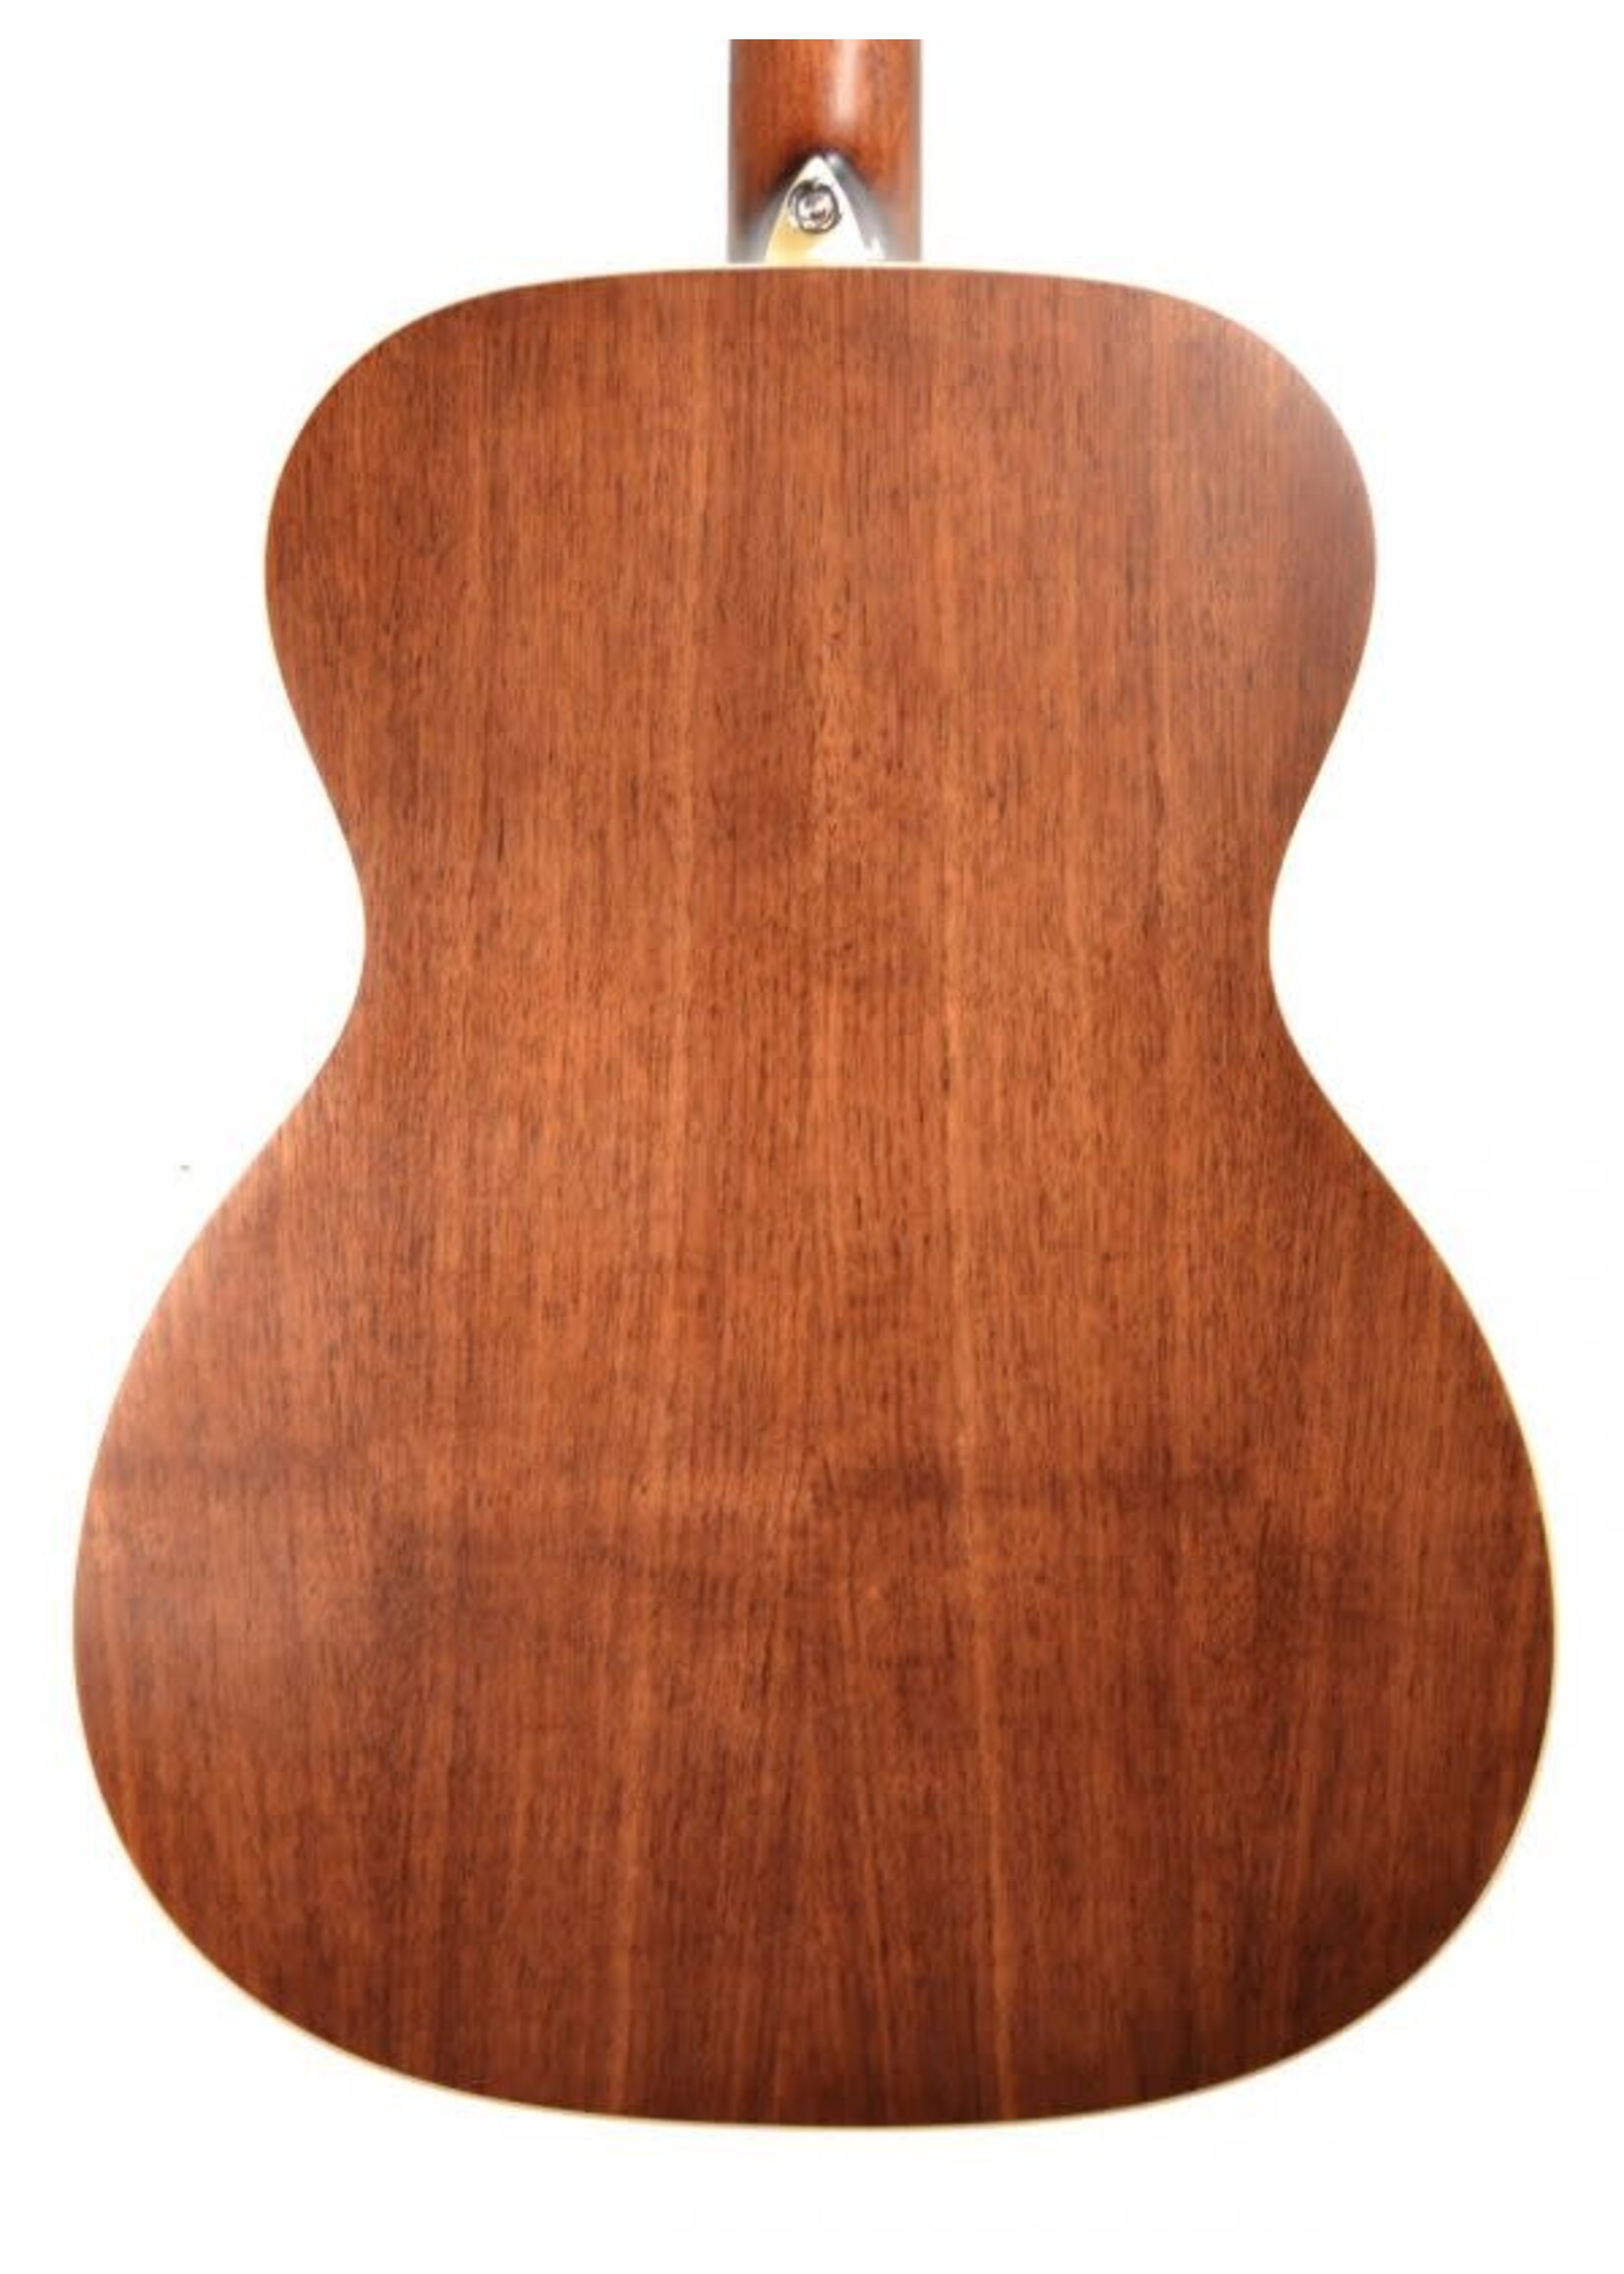 Alvarez Alvarez AF75E-AGP Solid Red Cedar Top OM Size Acoustic/Electric Guitar w/ Gig Bag